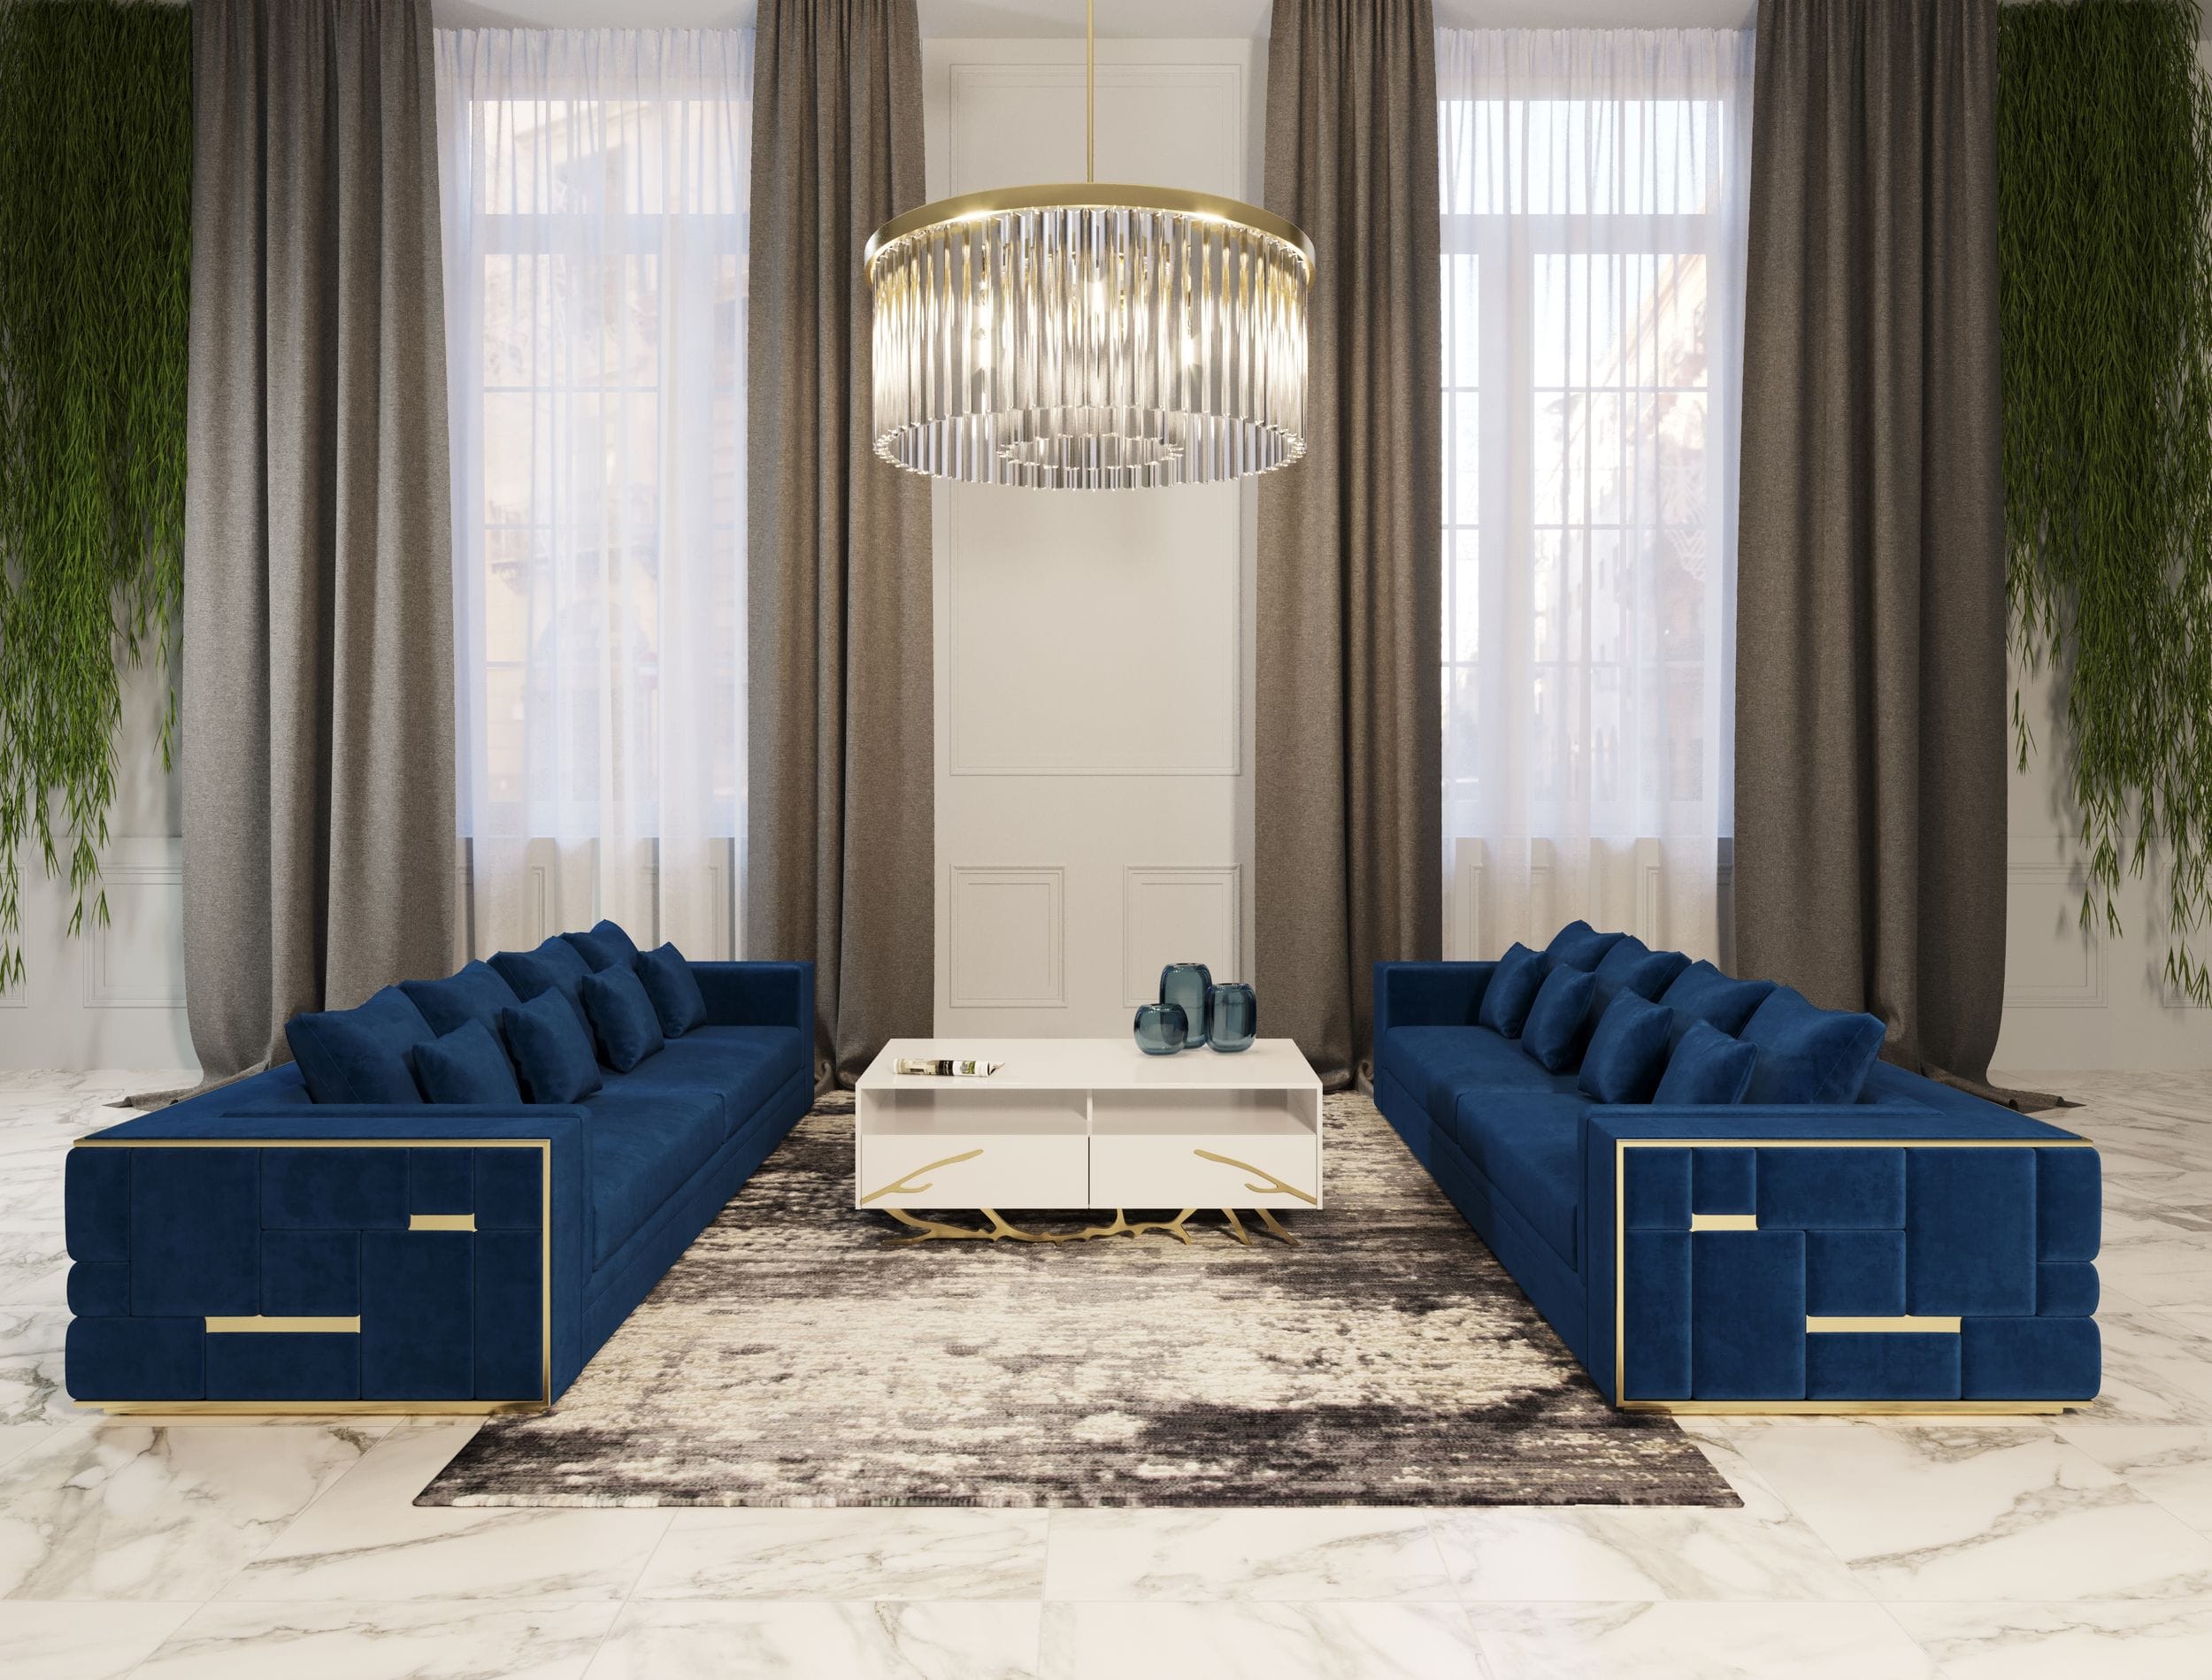 Divani Casa Mobray - Glam Blue & Gold Fabric Sofa-Sofa-VIG-Wall2Wall Furnishings